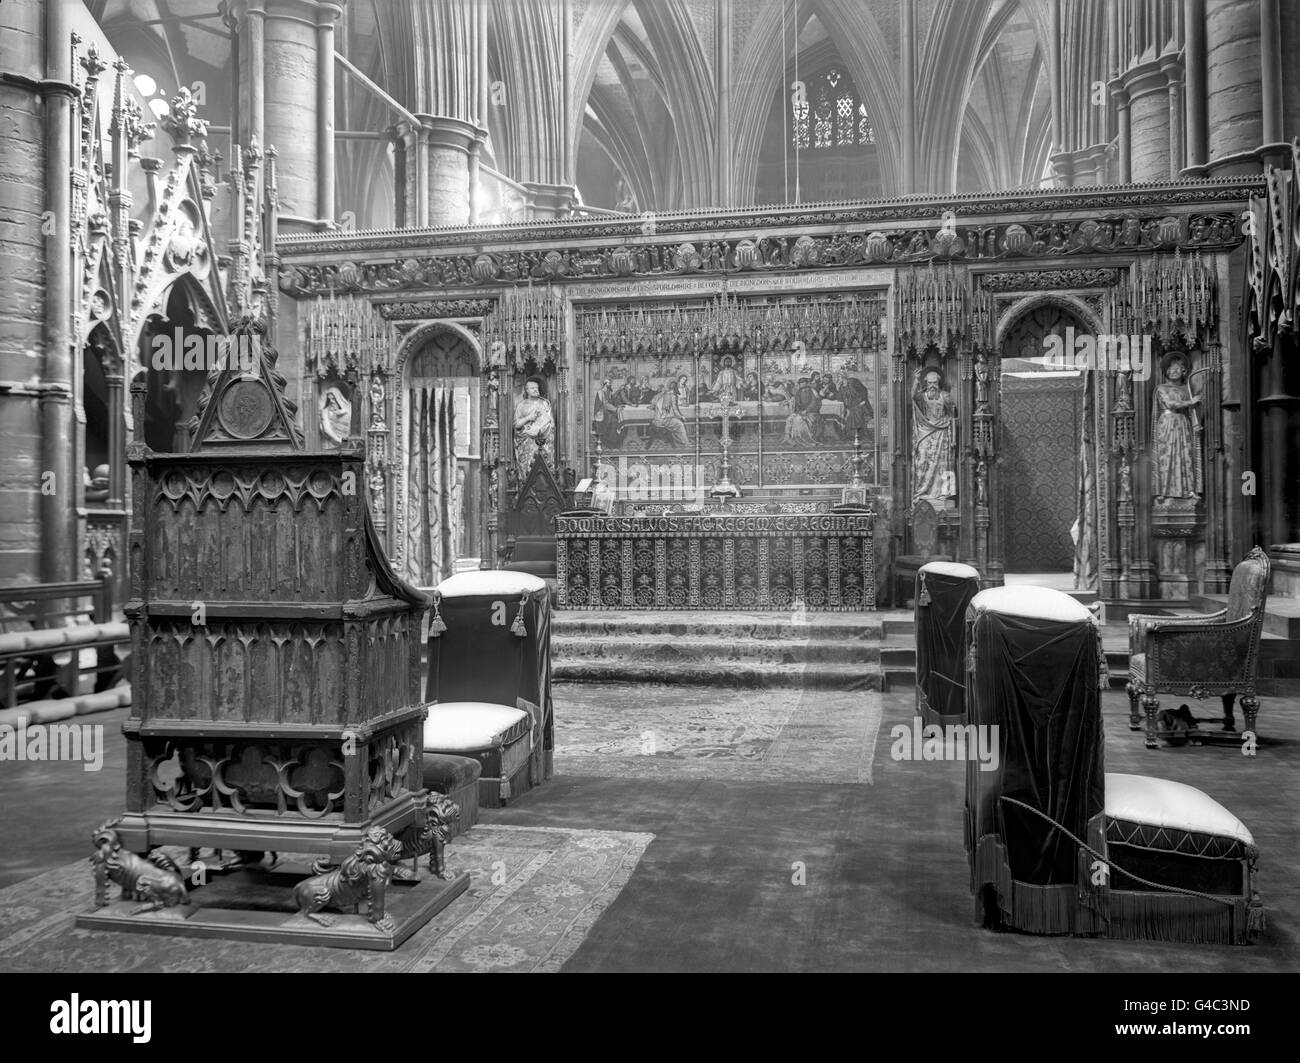 König Edward's Chair, oder der Krönungsstuhl, der Thron, auf dem der britische Monarch für die Krönung am Hochaltar in Westminster Abbey sitzt. Es wurde 1296 von König Edward I. in Auftrag gegeben, den Krönungsstein von Schottland, den er von den Schotten gefangen genommen hatte, zu enthalten, der als Stein des Scone bekannt ist Stockfoto